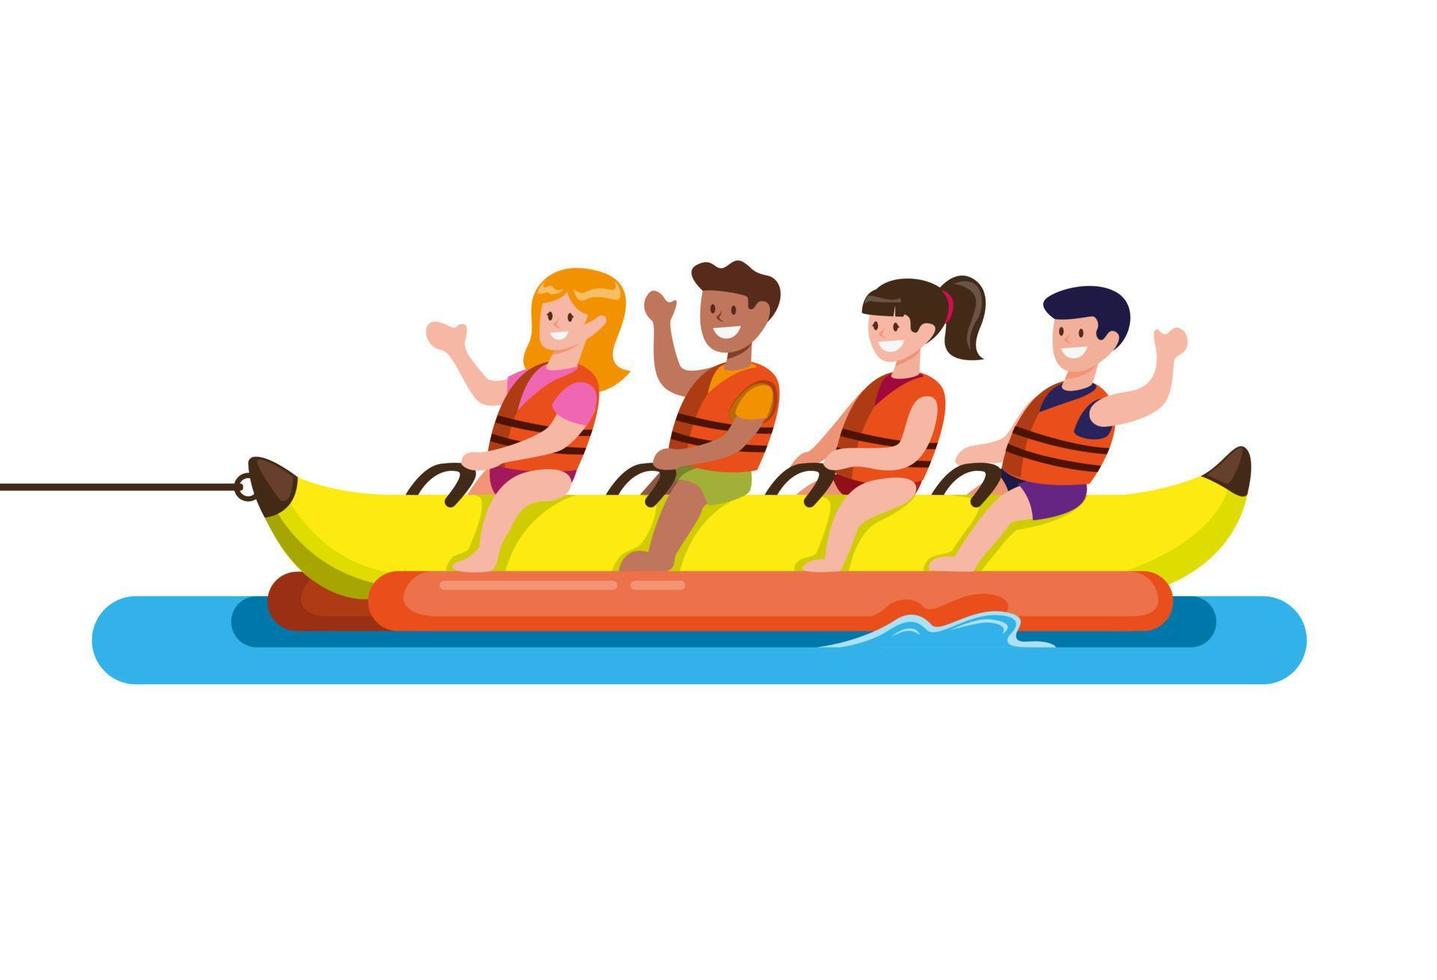 la gente viaja en un bote banana, deportes acuáticos en la playa. vector de ilustración plana de dibujos animados aislado en fondo blanco